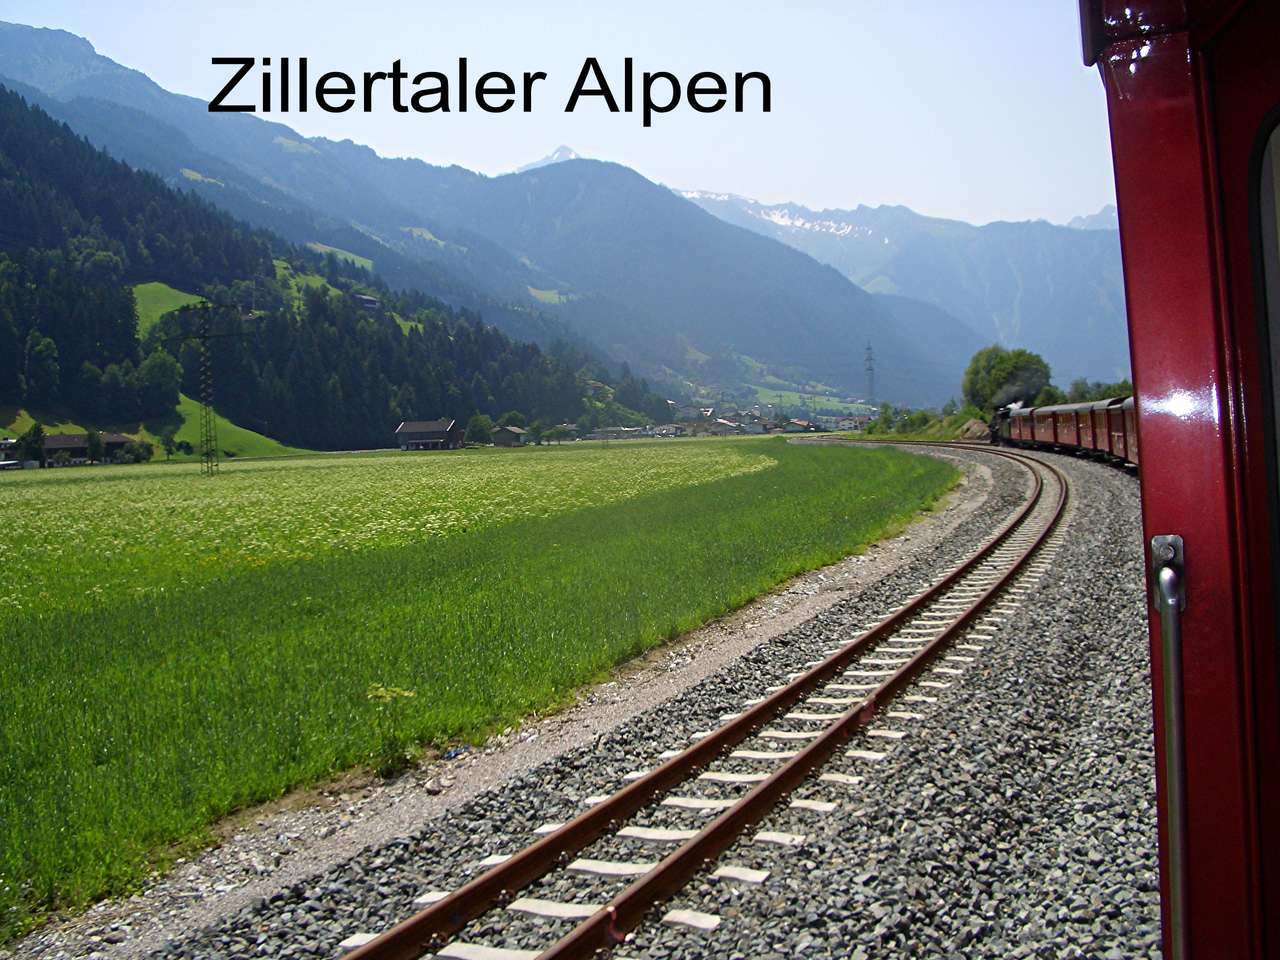 Zillertalbahn legpuzzel online